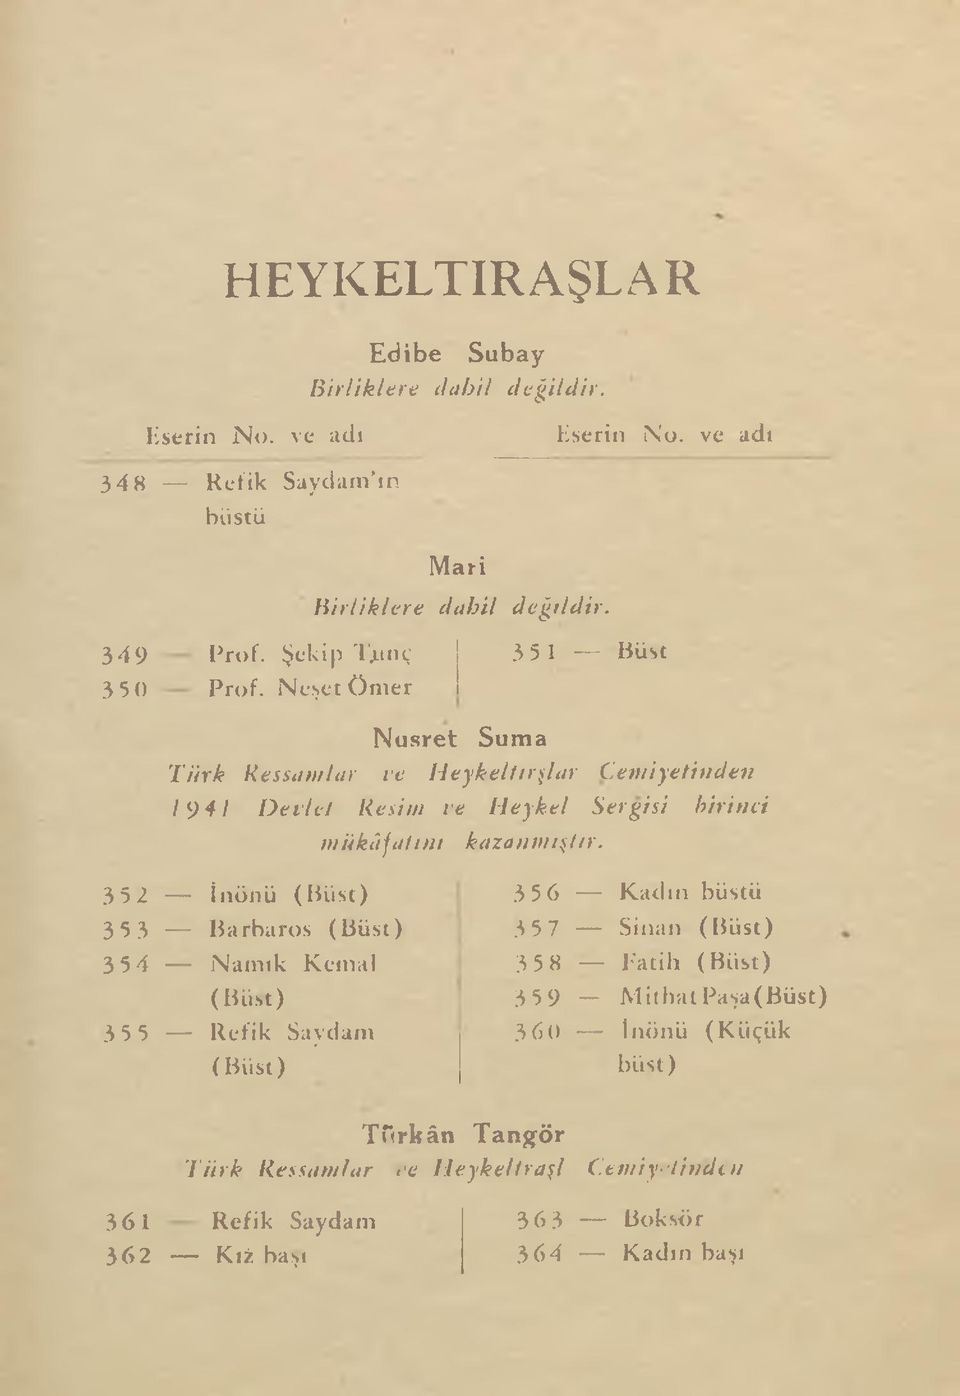 3 5 1 Büst Nusret Suma Türk Ressamlar ve H eykeli ıralar Cemiyetinden 941 D evlcl Resim ve H eykel Sergisi birinci m ükâfatını kazanmıştır.